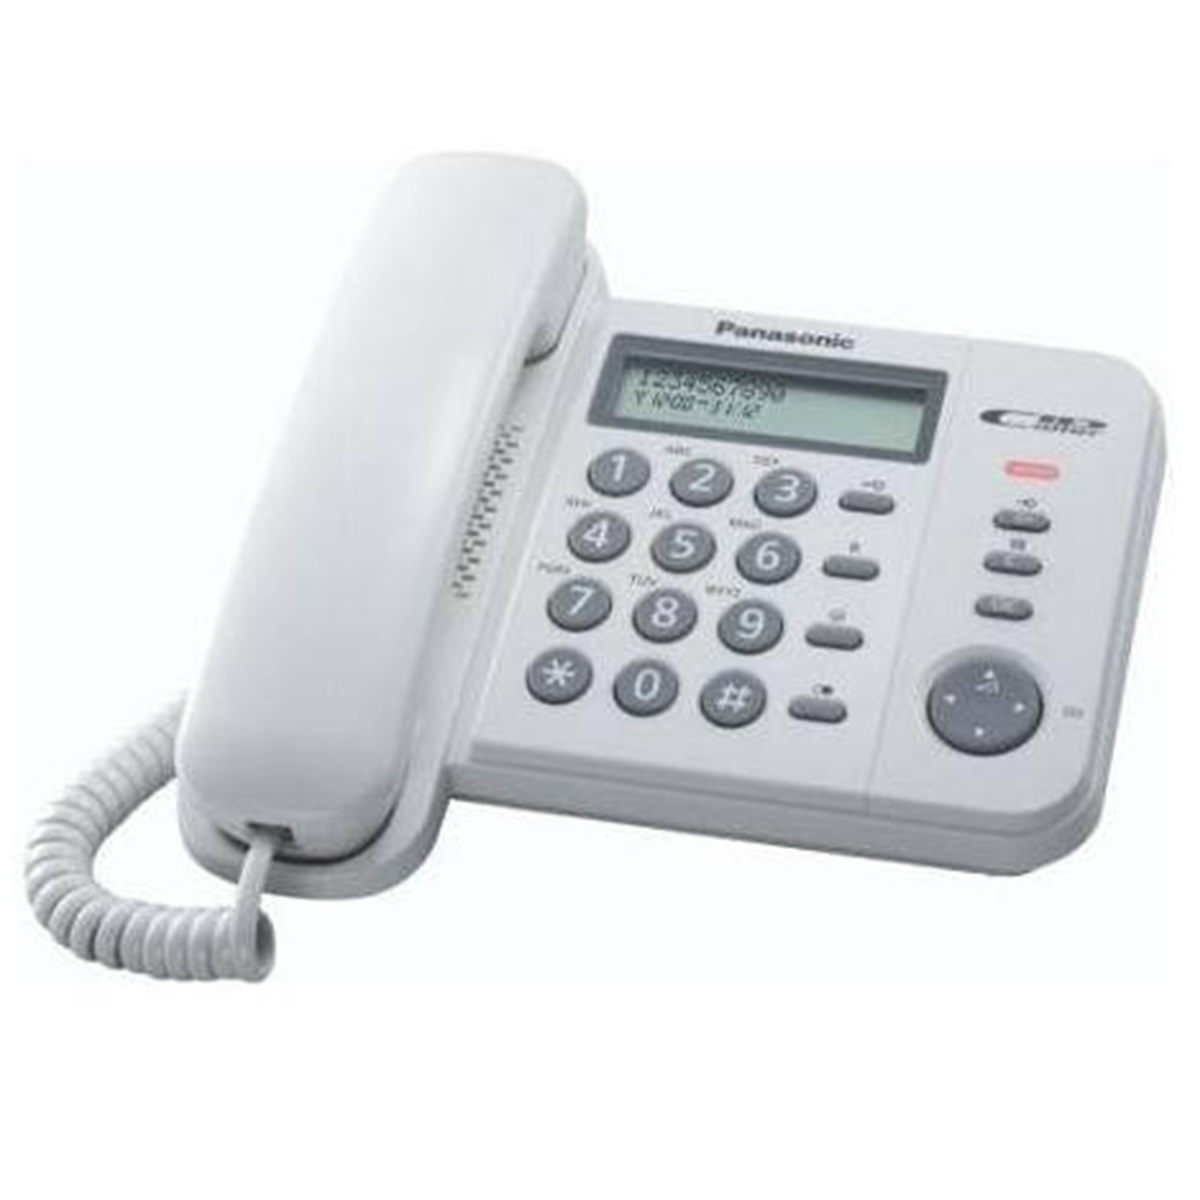 باناسونيك هاتف سلكي عادي ، يتميز بذاكرة إعادة طلب 20 محطة ، أبيض ، KX-TS560MXW